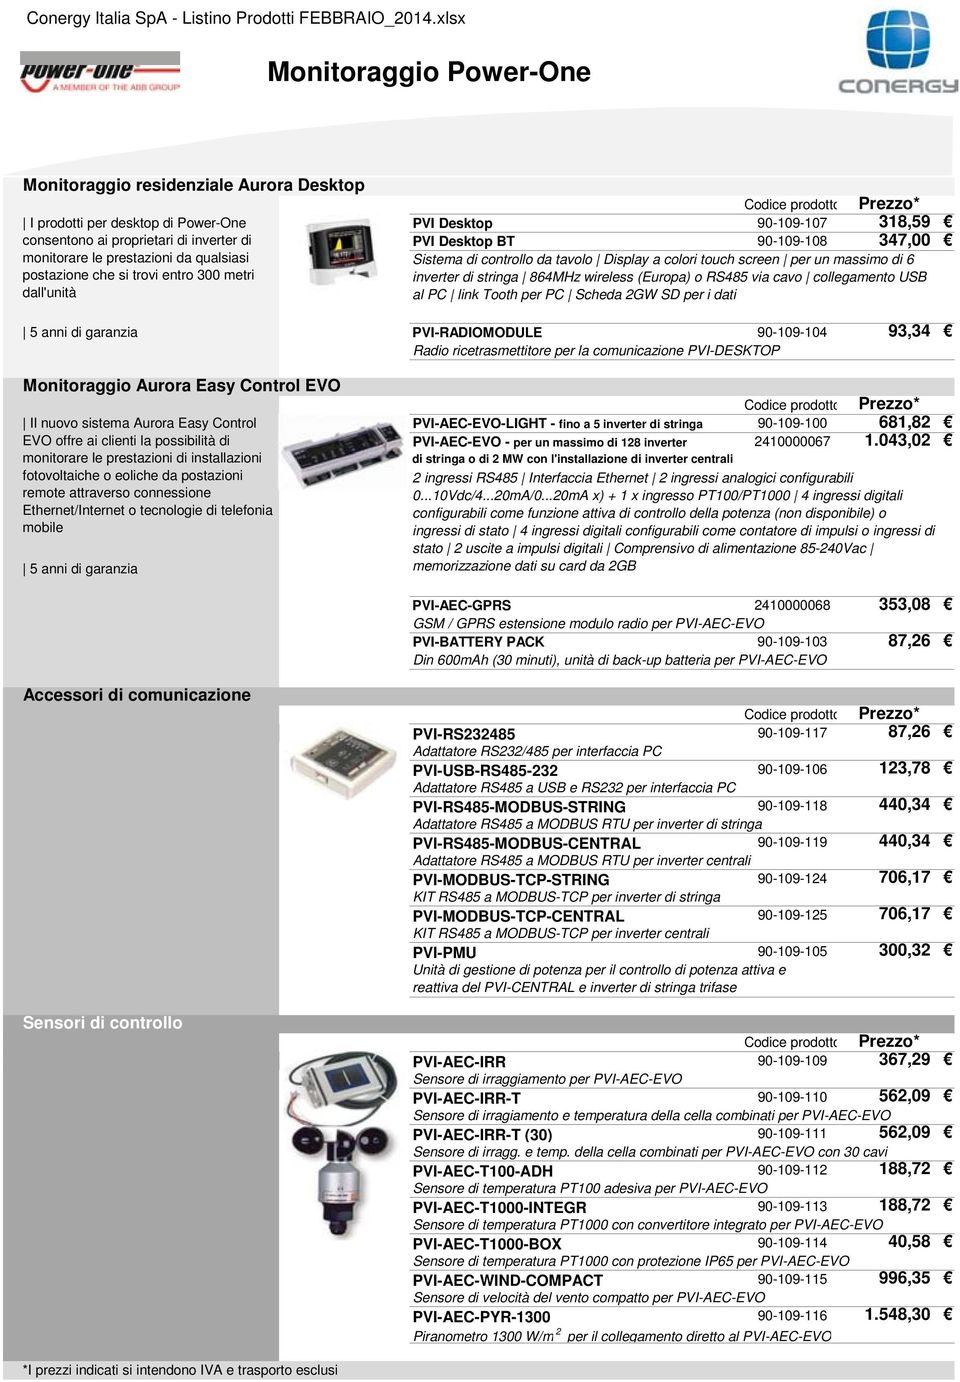 864MHz wireless (Europa) o RS485 via cavo collegamento USB al PC link Tooth per PC Scheda 2GW SD per i dati 5 anni di garanzia PVI-RADIOMODULE 90-109-104 93,34 Radio ricetrasmettitore per la